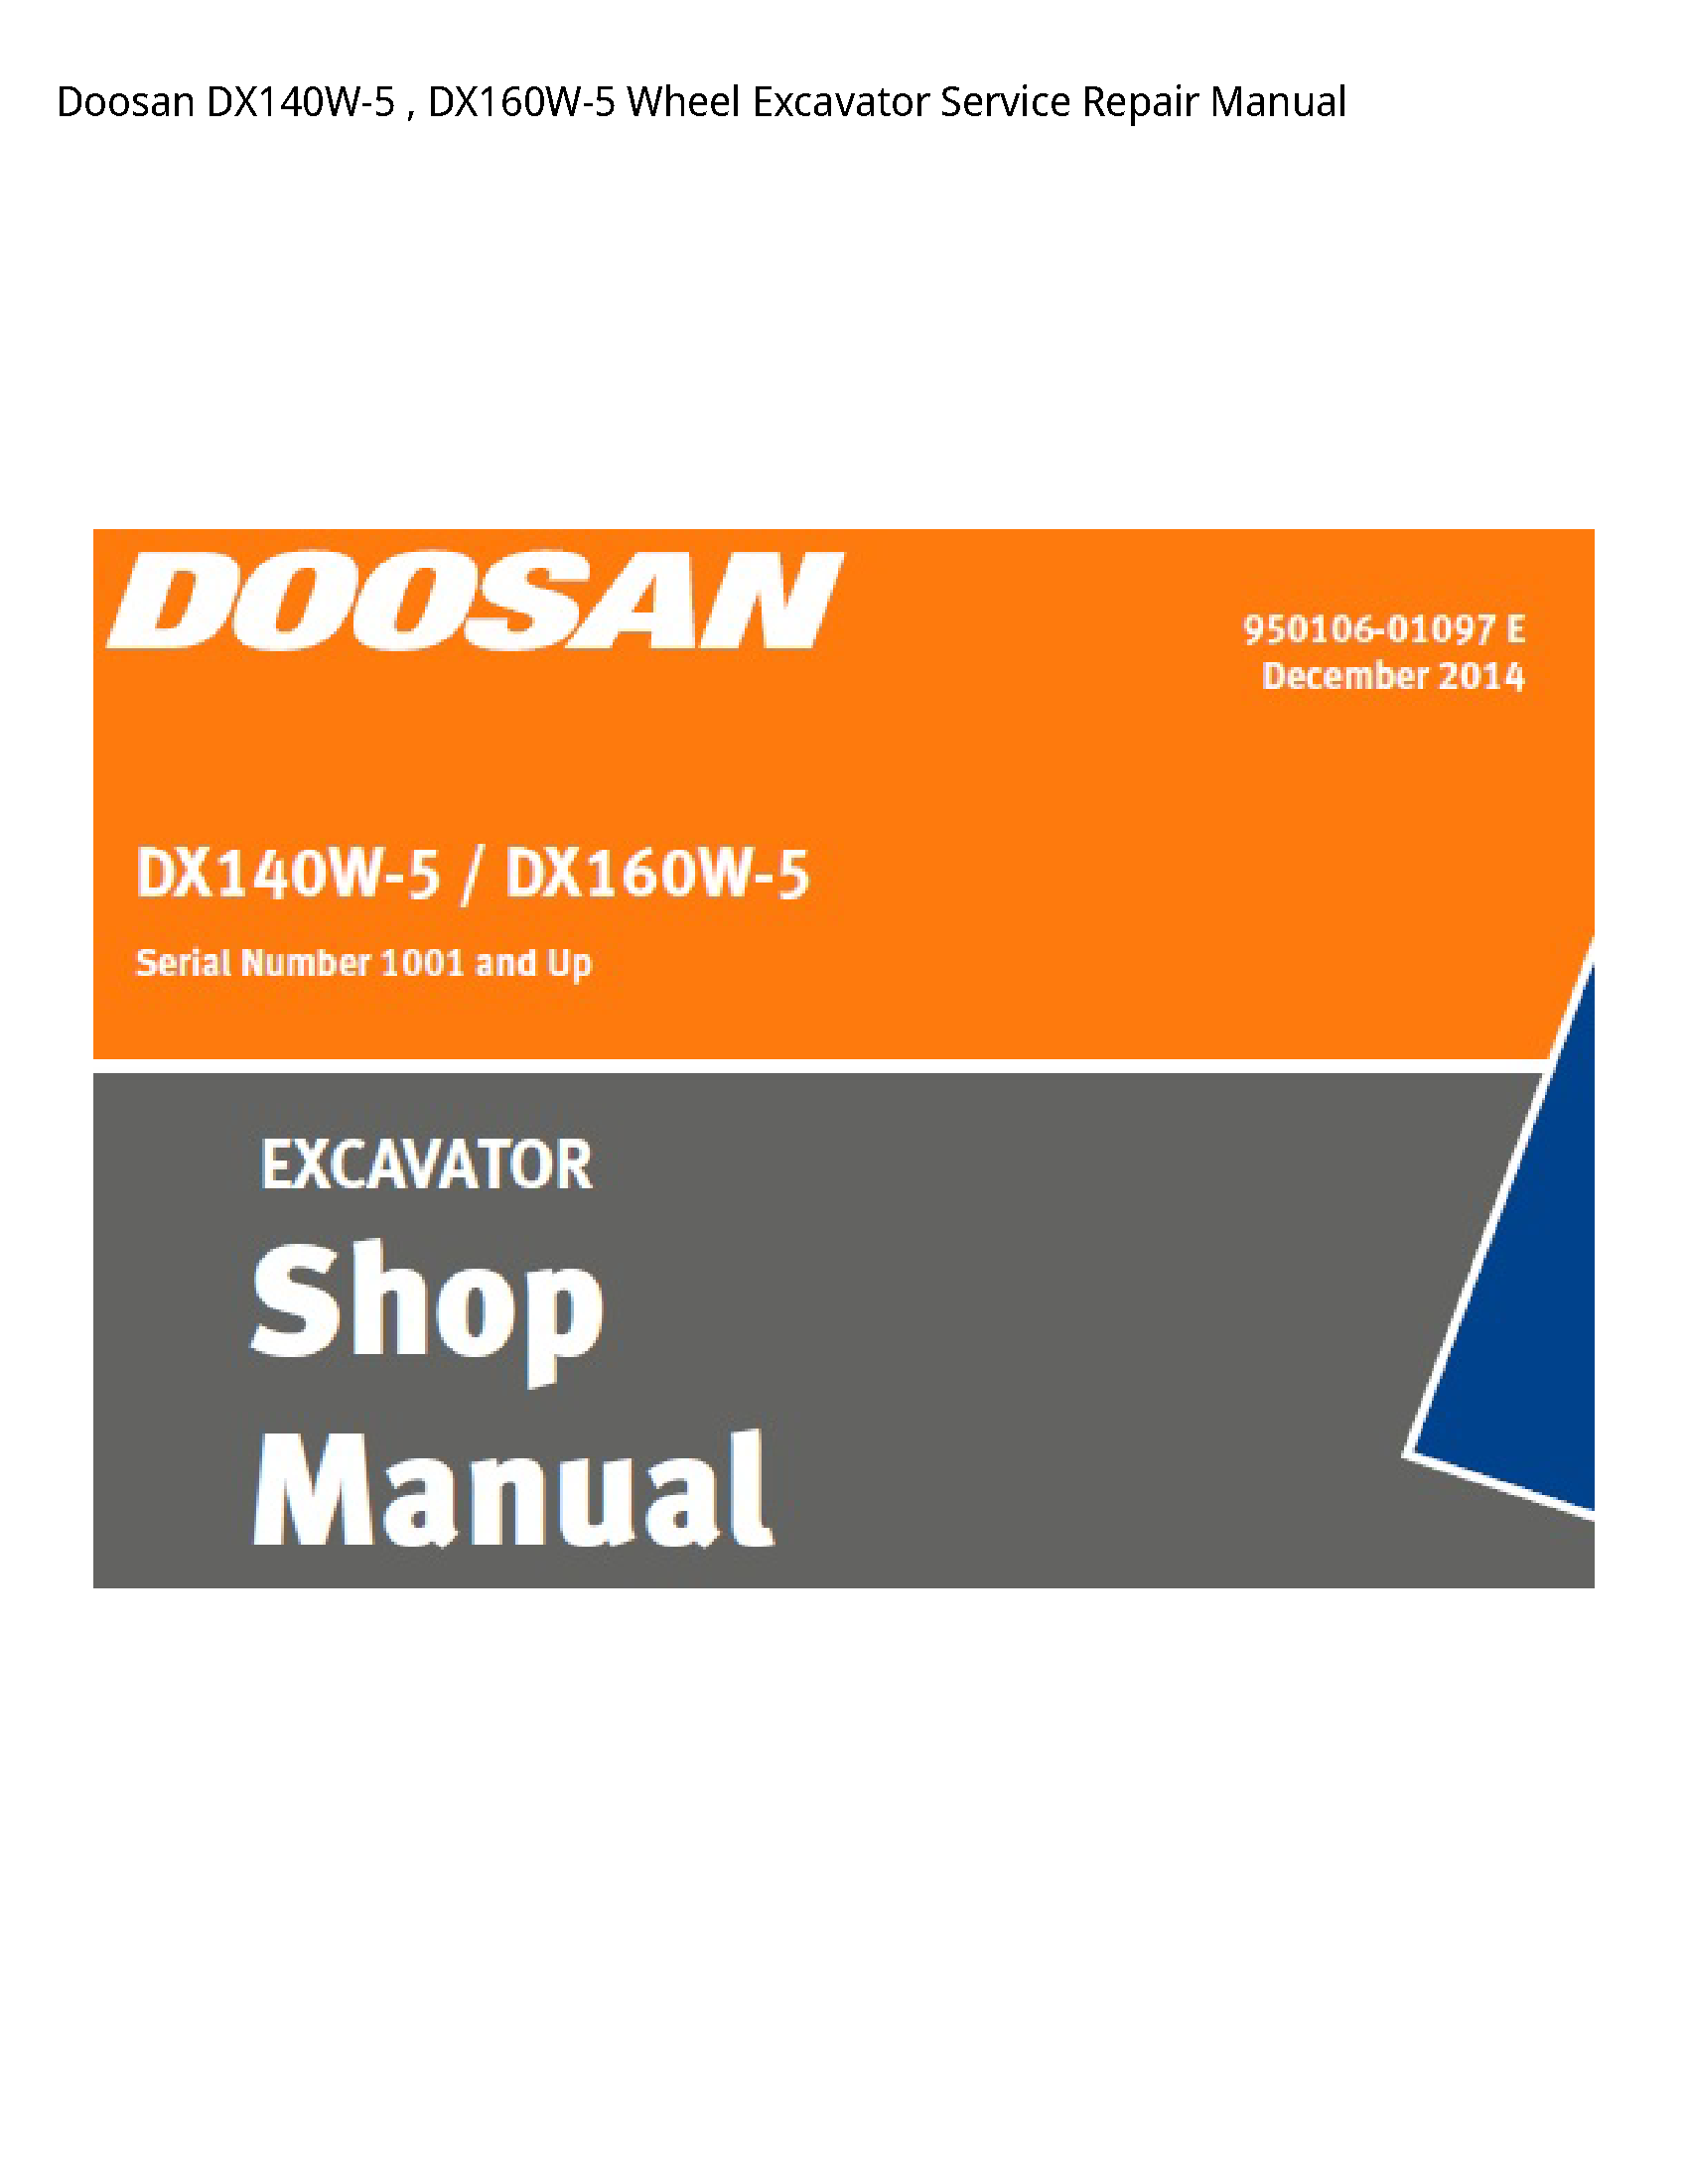 Doosan DX140W-5 Wheel Excavator manual